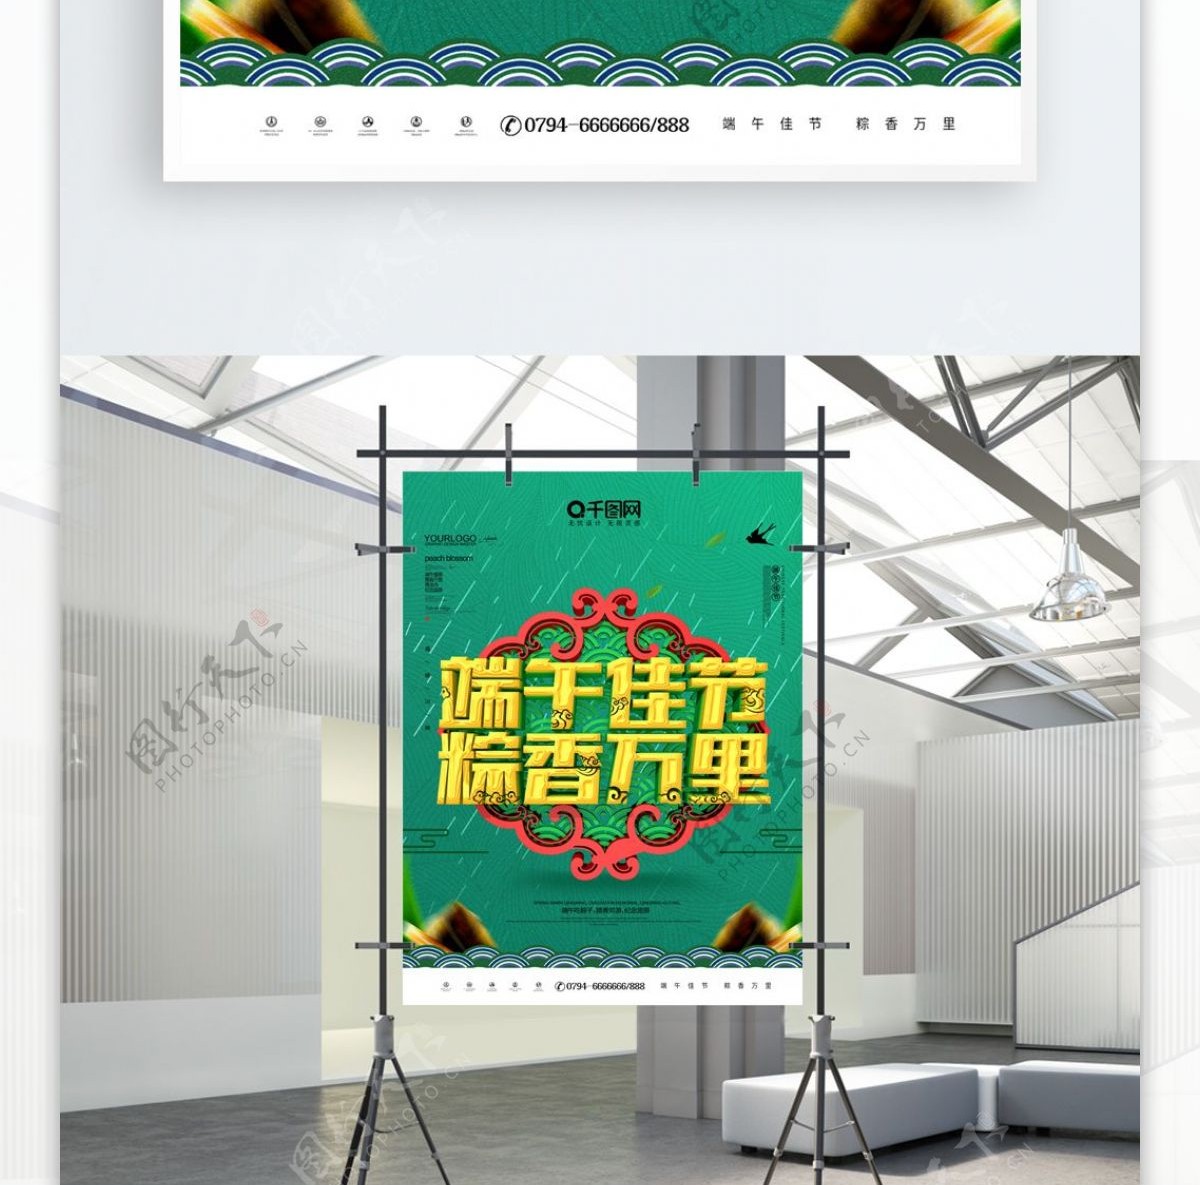 简约C4D端午佳节粽香万里节日宣传海报